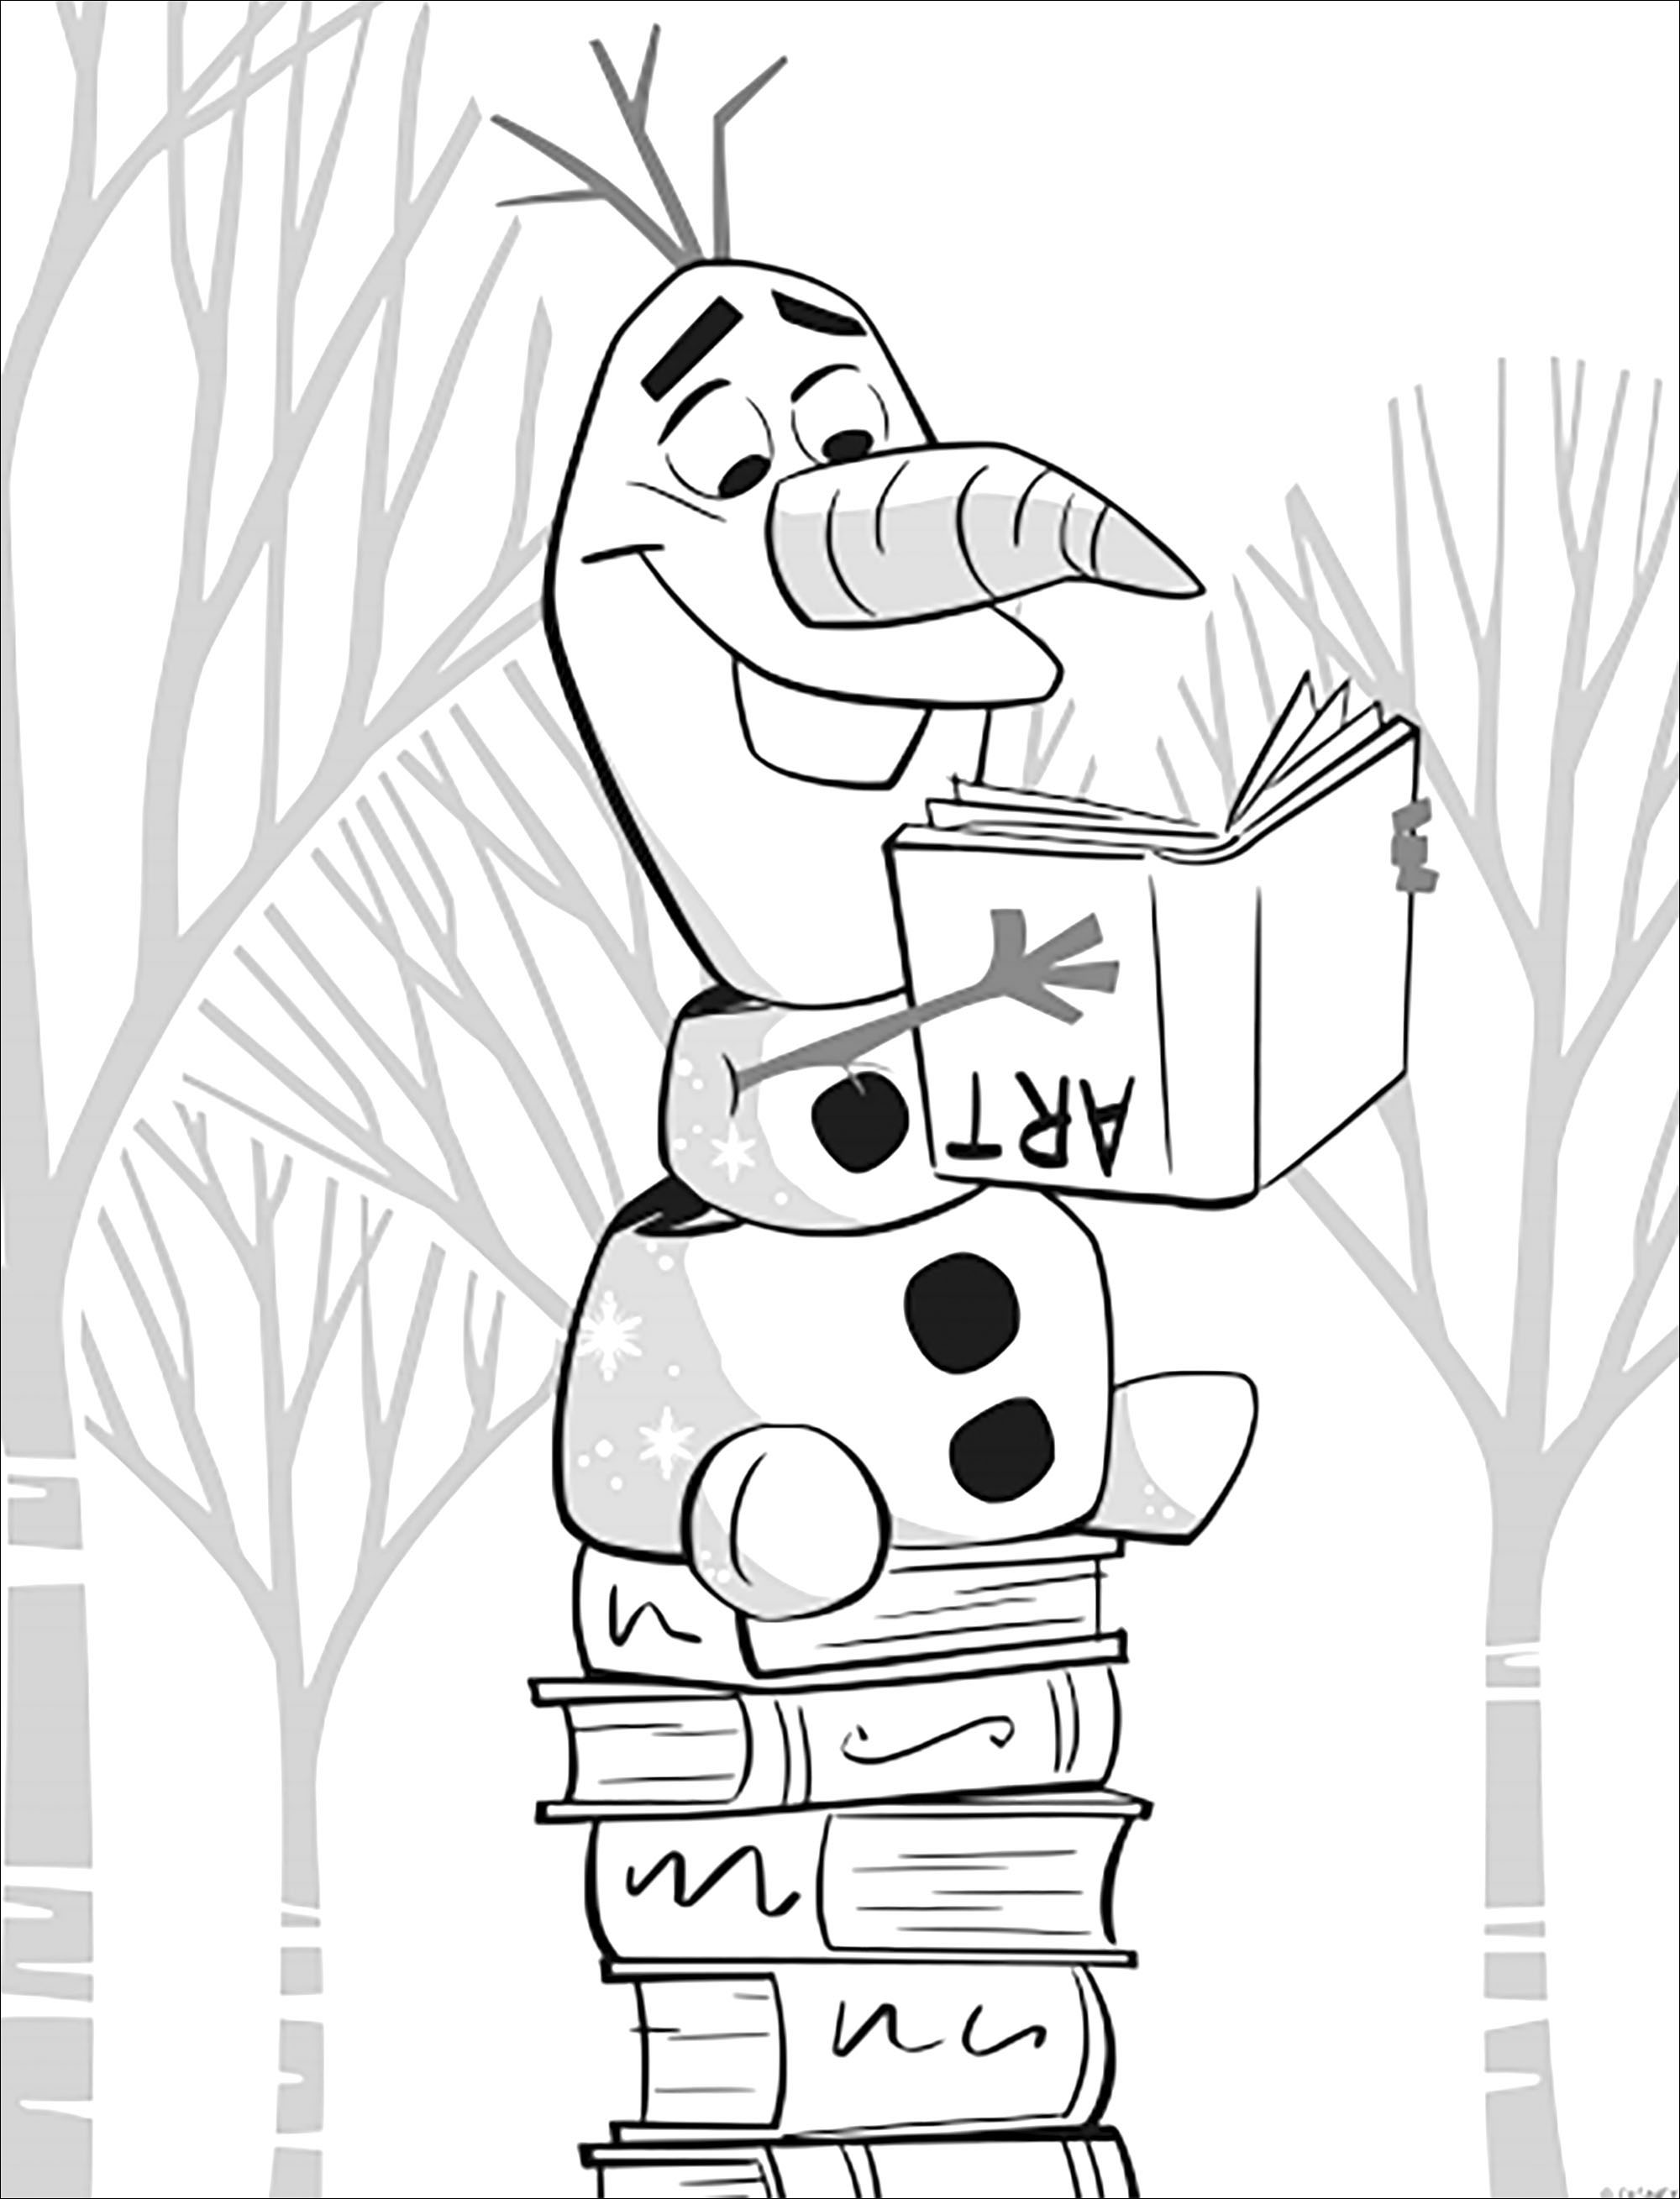 Et revoici ce cher Olaf, toujours aussi drôle dans La reine des neiges 2 de Disney (version sans texte)